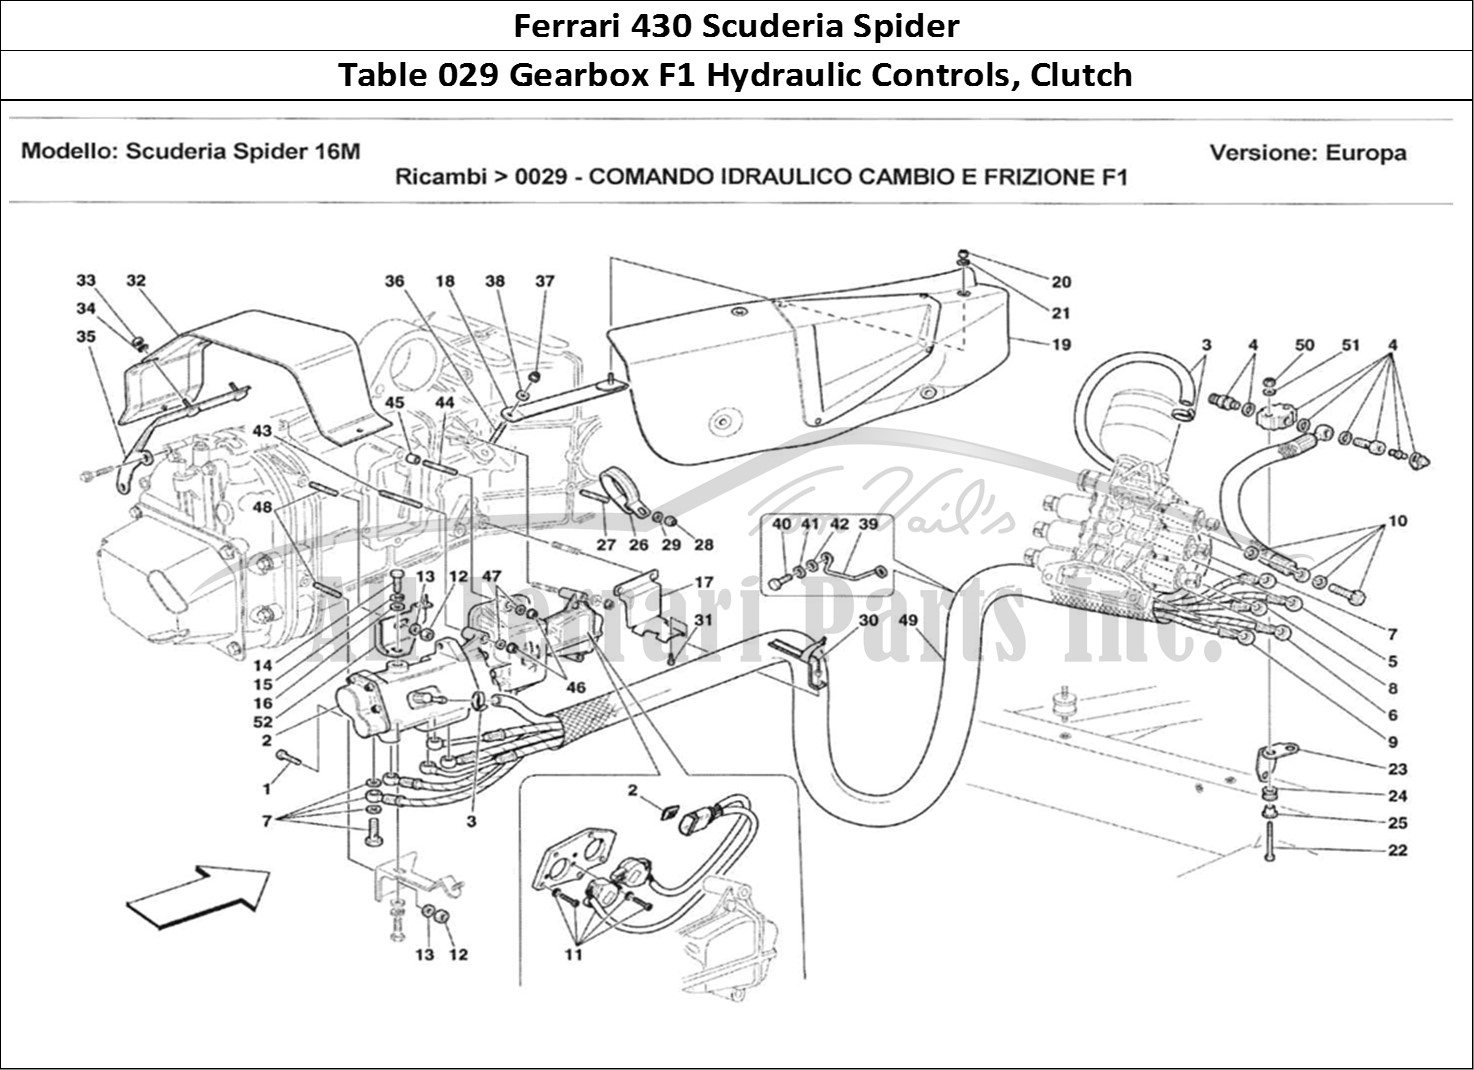 Ferrari Parts Ferrari 430 Scuderia Spider 16M Page 029 Comando Idraulico Cambio